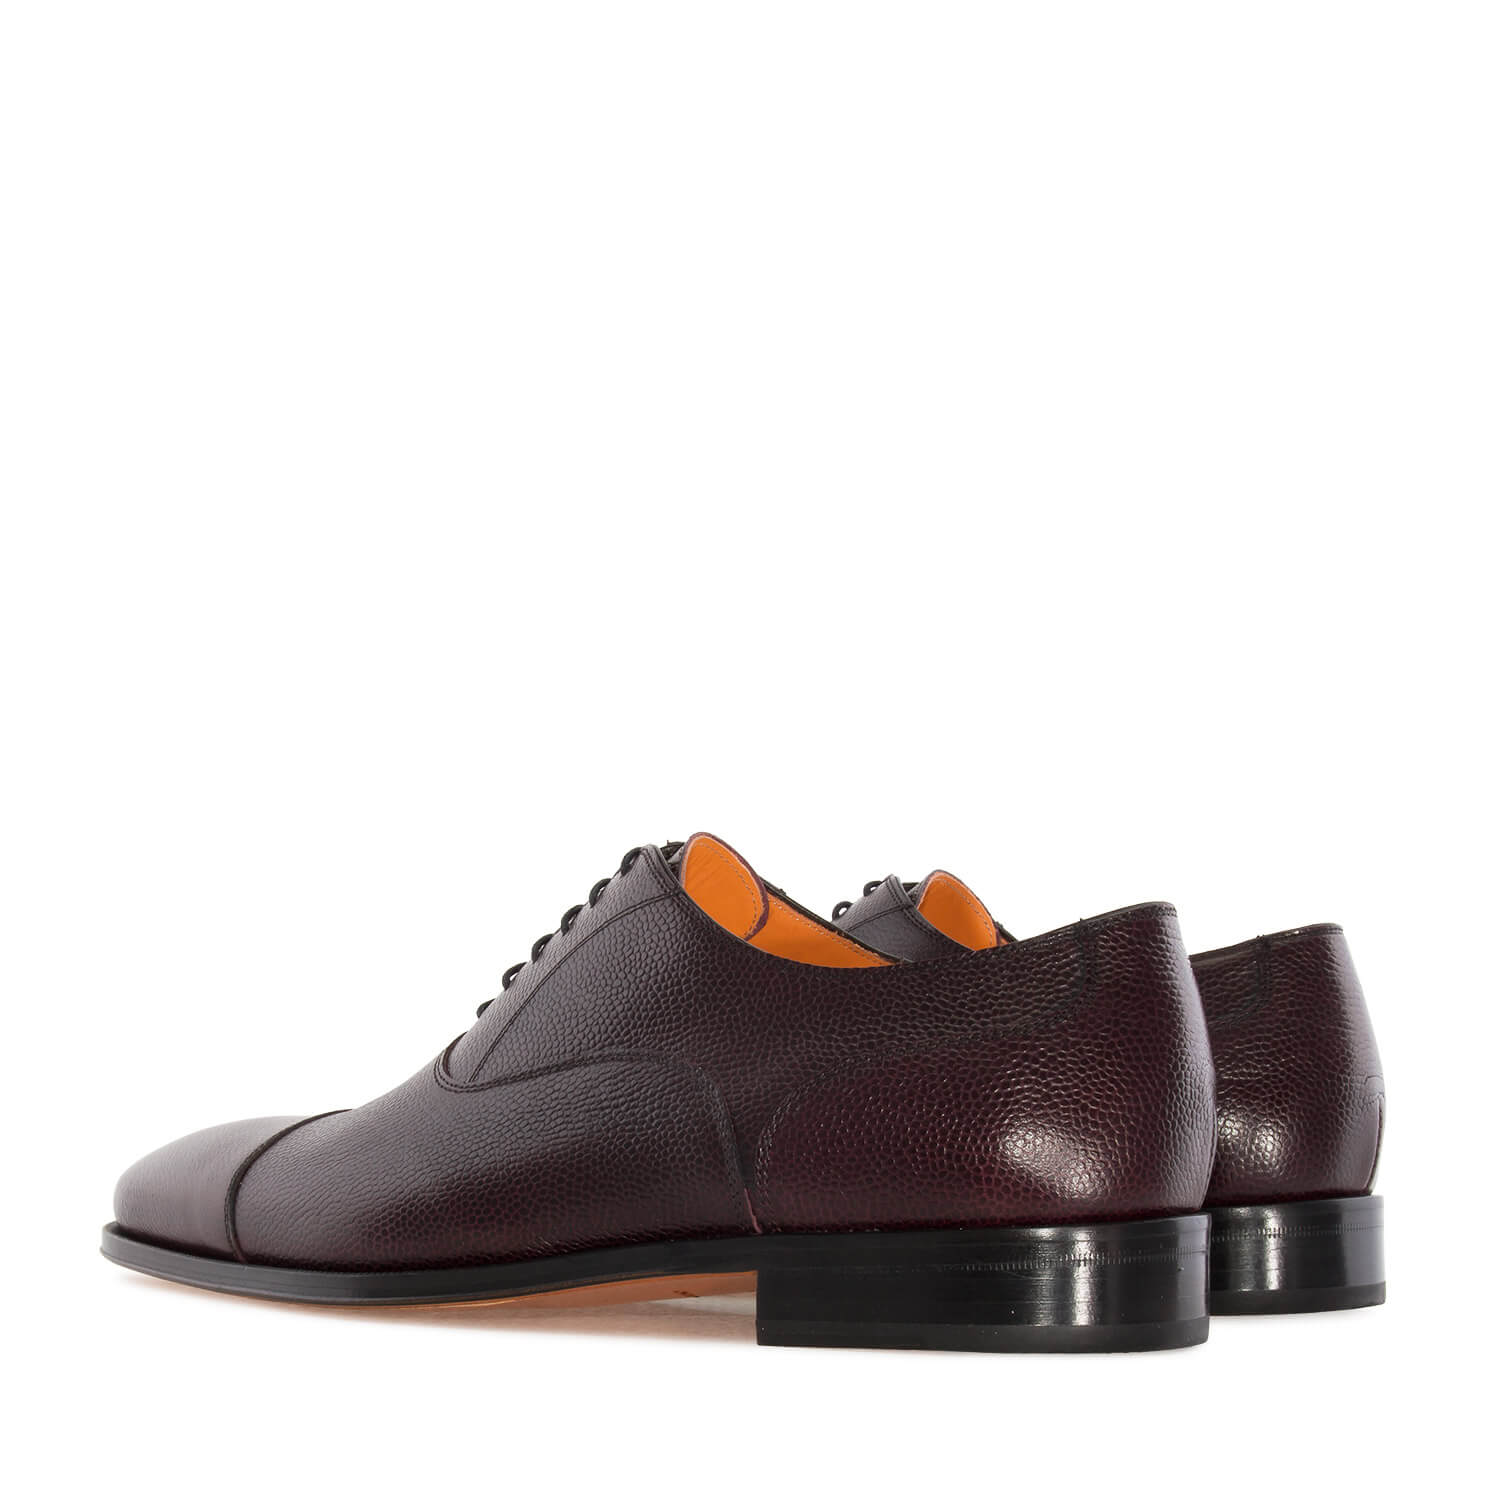 Zapatos estilo Oxford en Piel Marrón Burdeos 